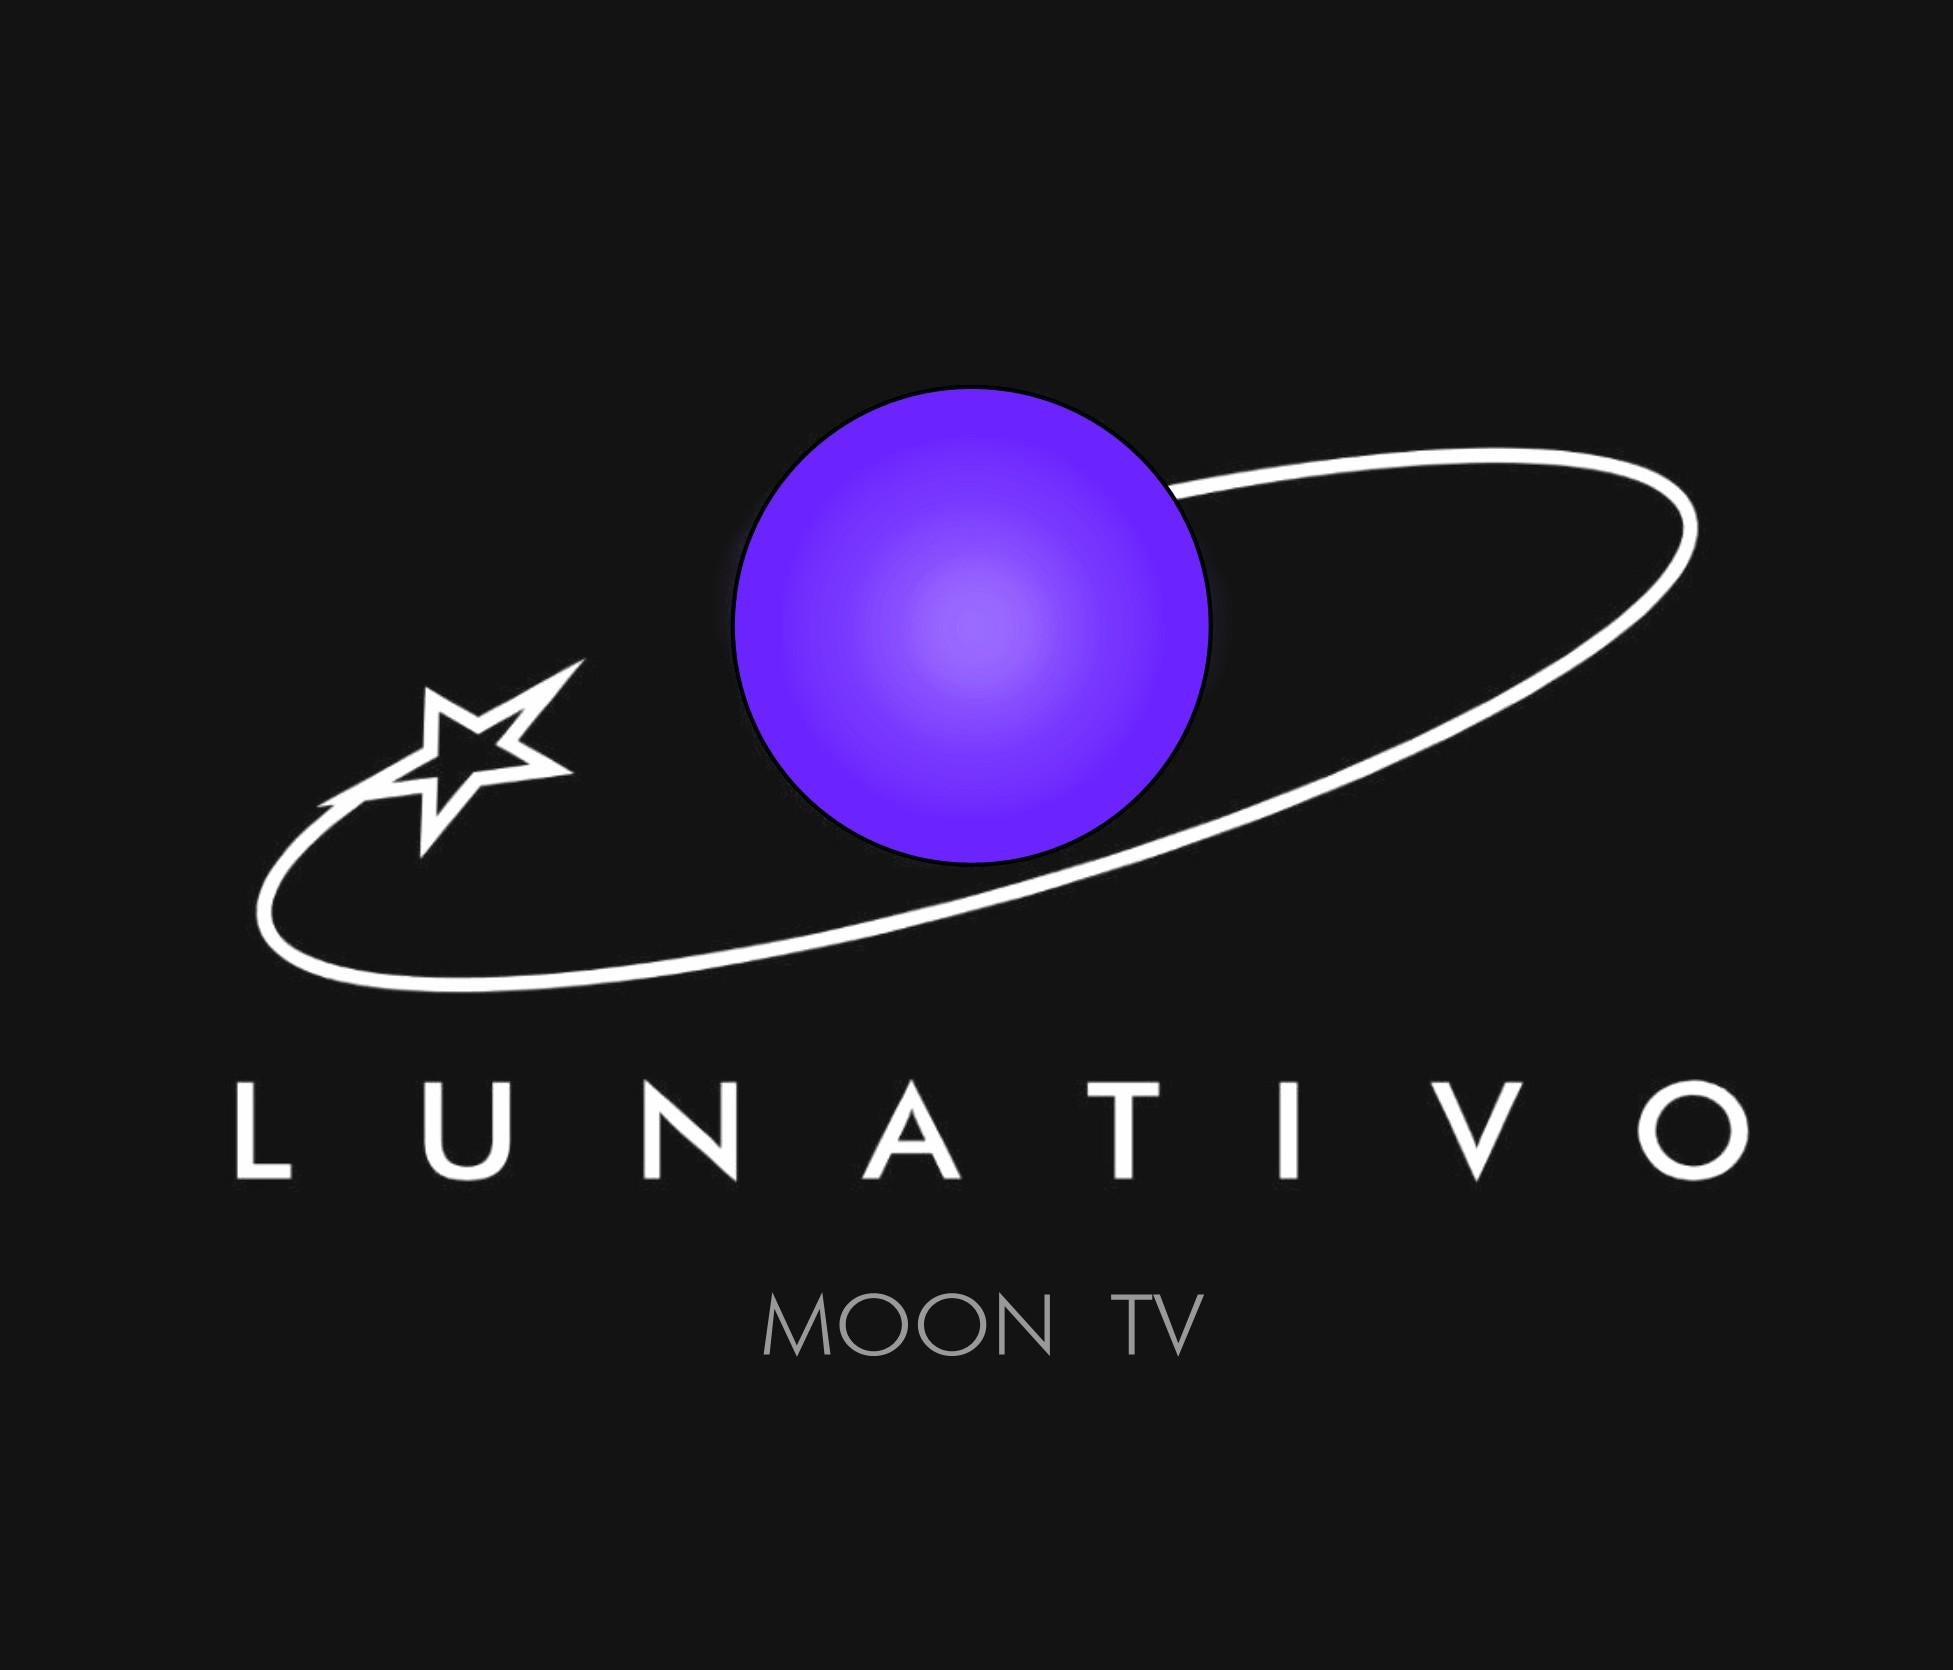 Art Donovan / Kinetic, Illuminated, Moon TV Sculpture, Midcentury/Atomic Age 9